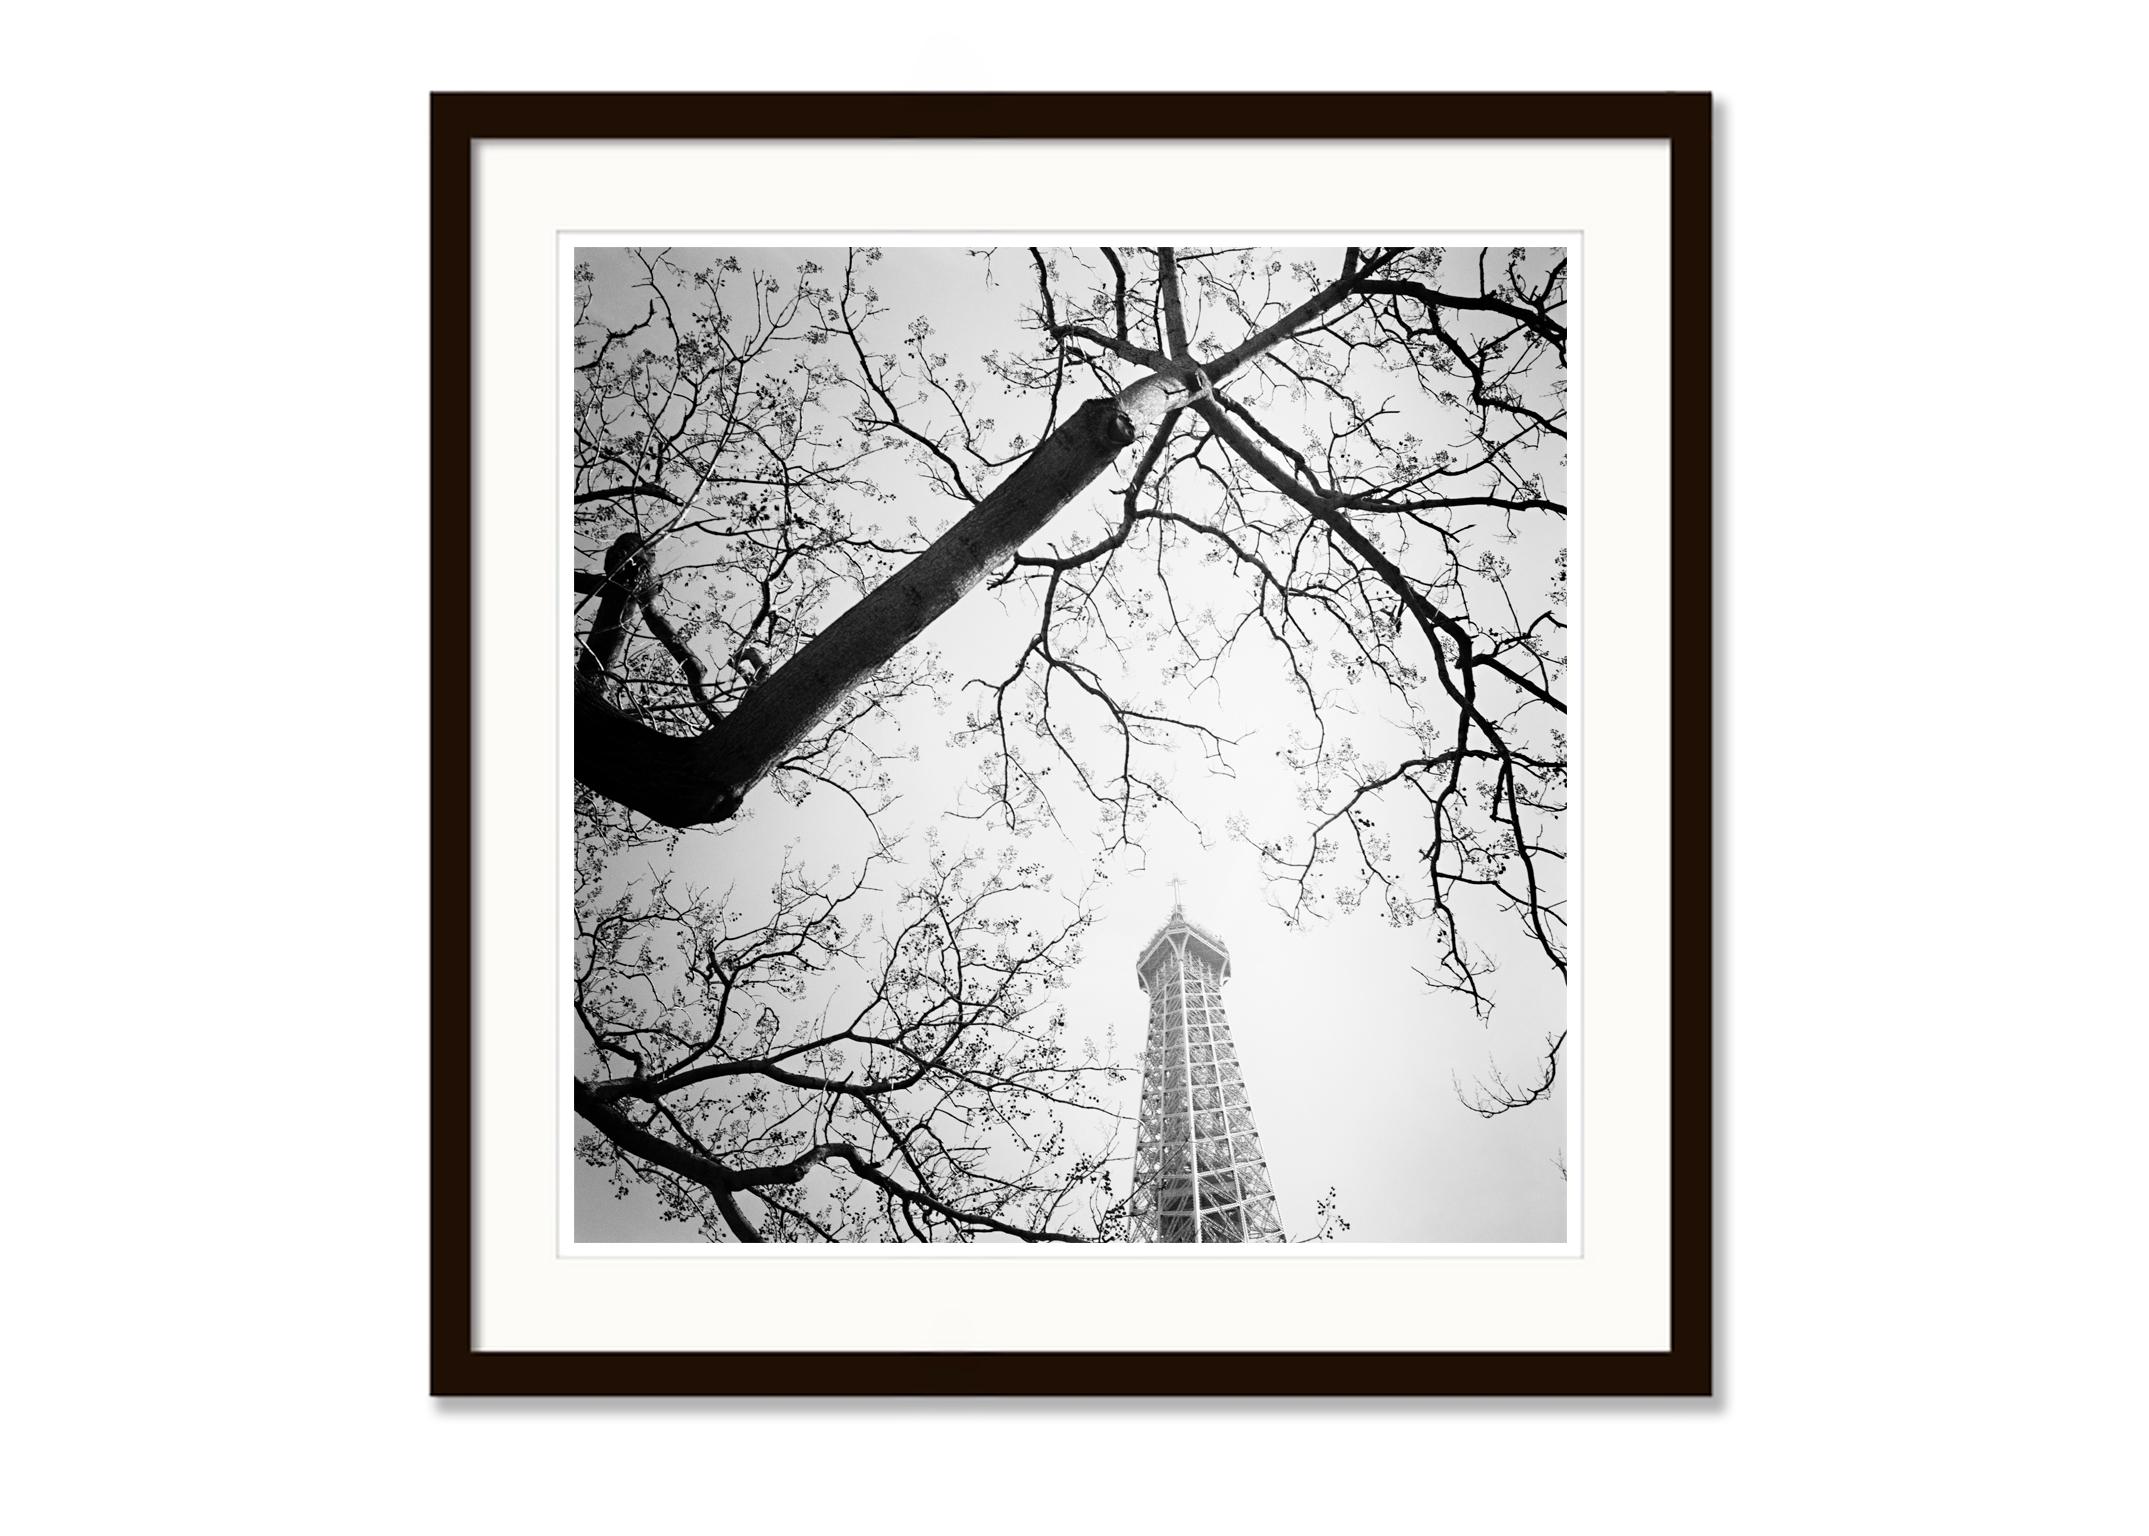 Baum und der Turm, Paris, Frankreich, Schwarz-Weiß-Kunstfotografie, Landschaft (Grau), Landscape Photograph, von Gerald Berghammer, Ina Forstinger